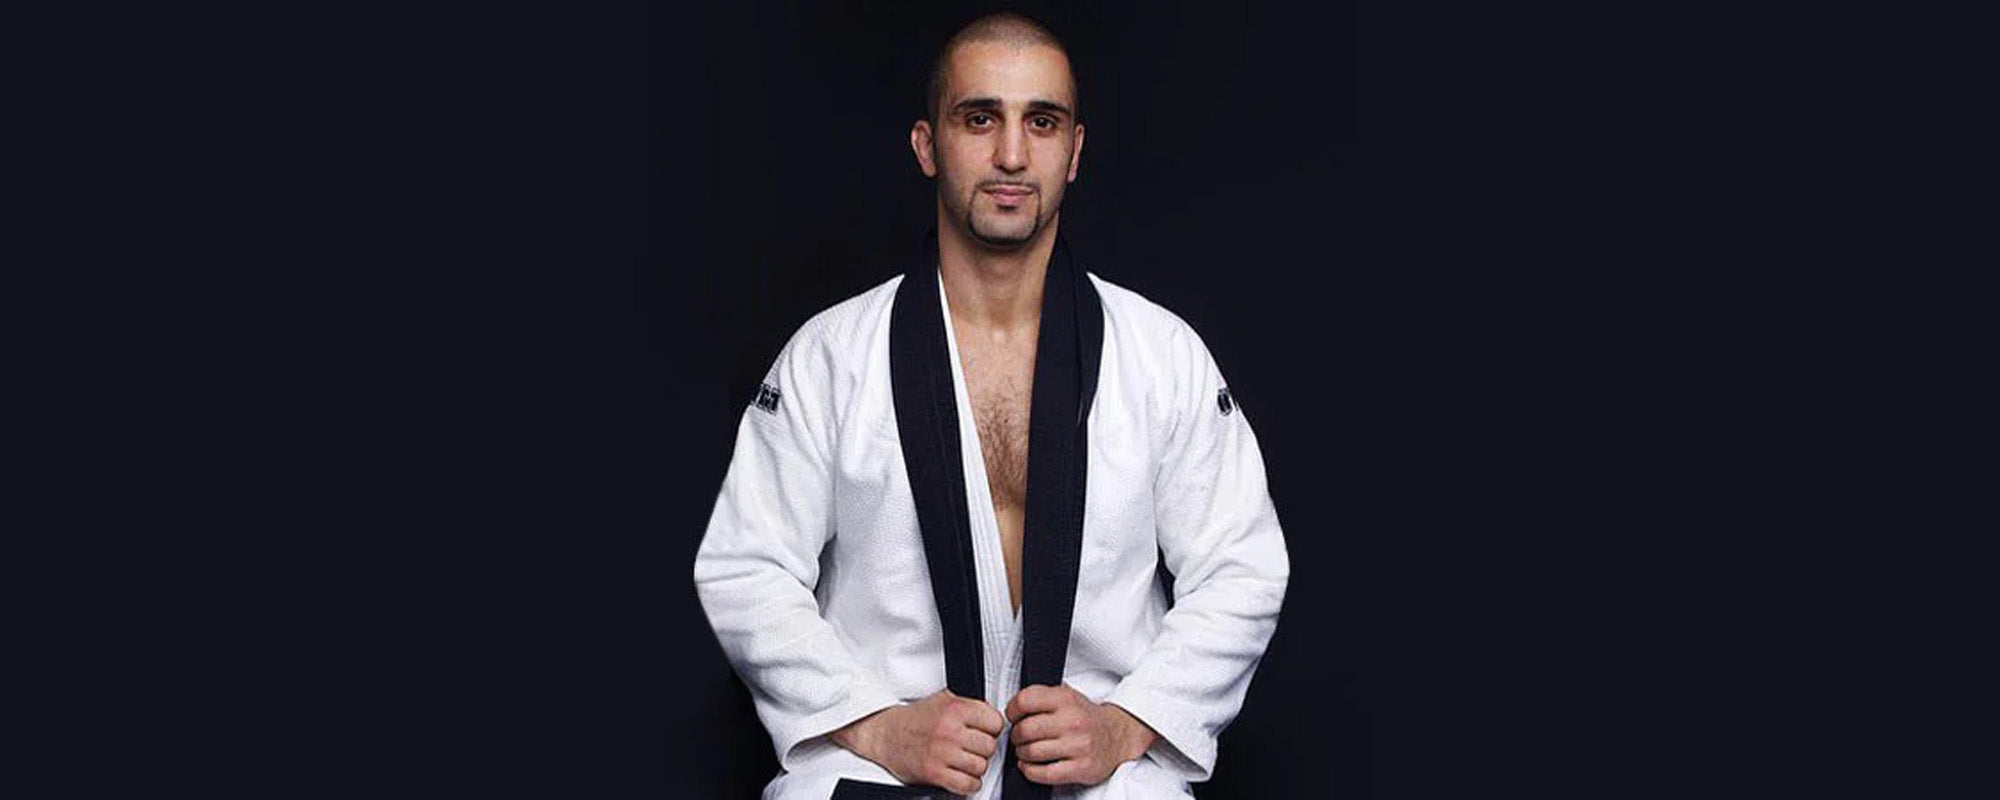 Firas Zahabi - Quebec’s Top MMA Coach